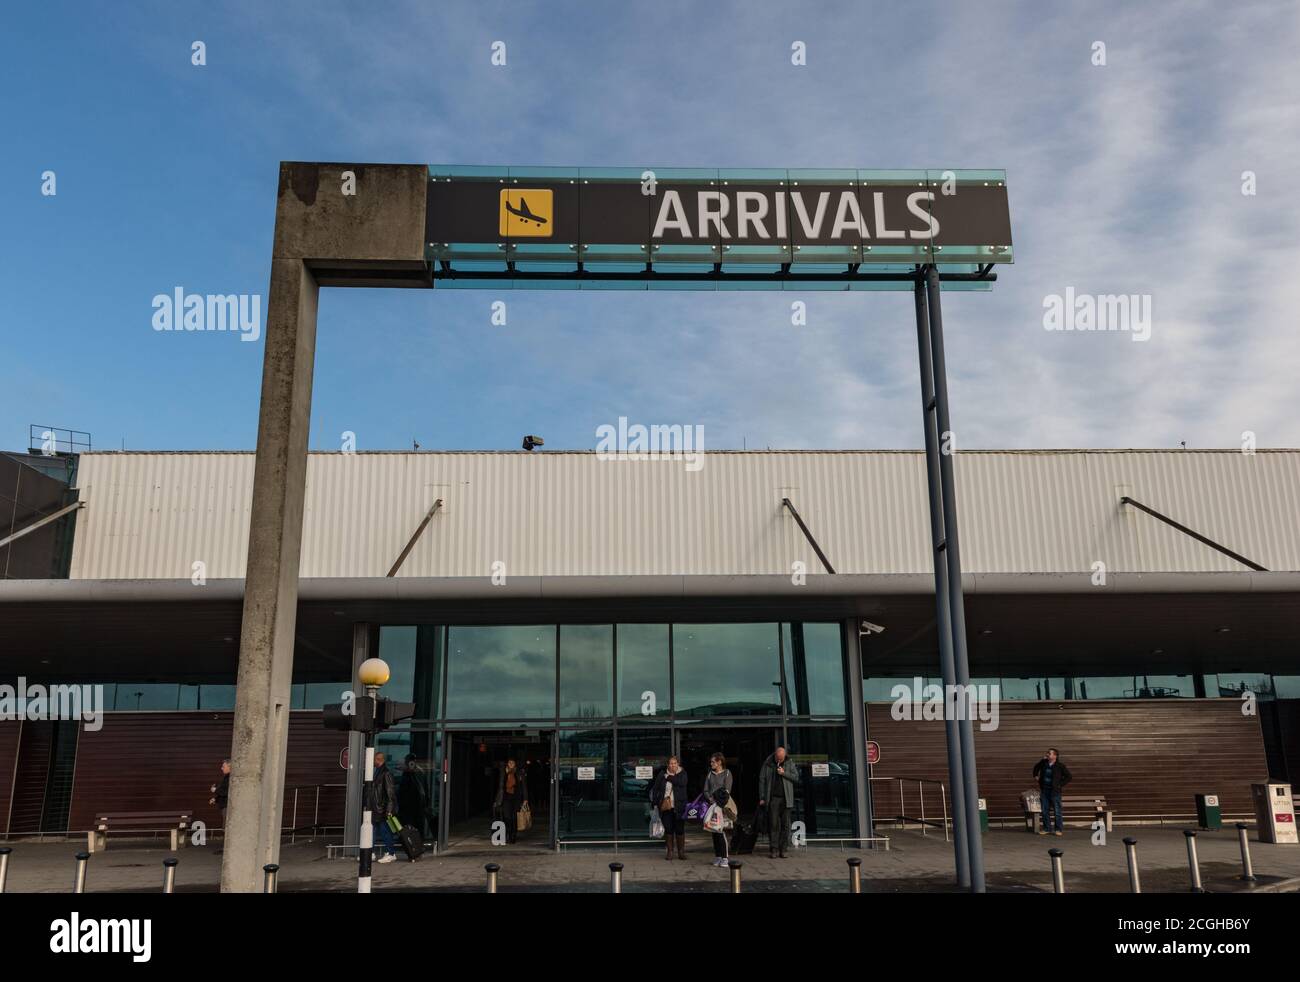 Aeroporto di Shannon, Irlanda - 21 novembre 2016: I Paaengers escono dall'edificio degli arrivi all'aeroporto di Shannon, Repubblica d'Irlanda Foto Stock